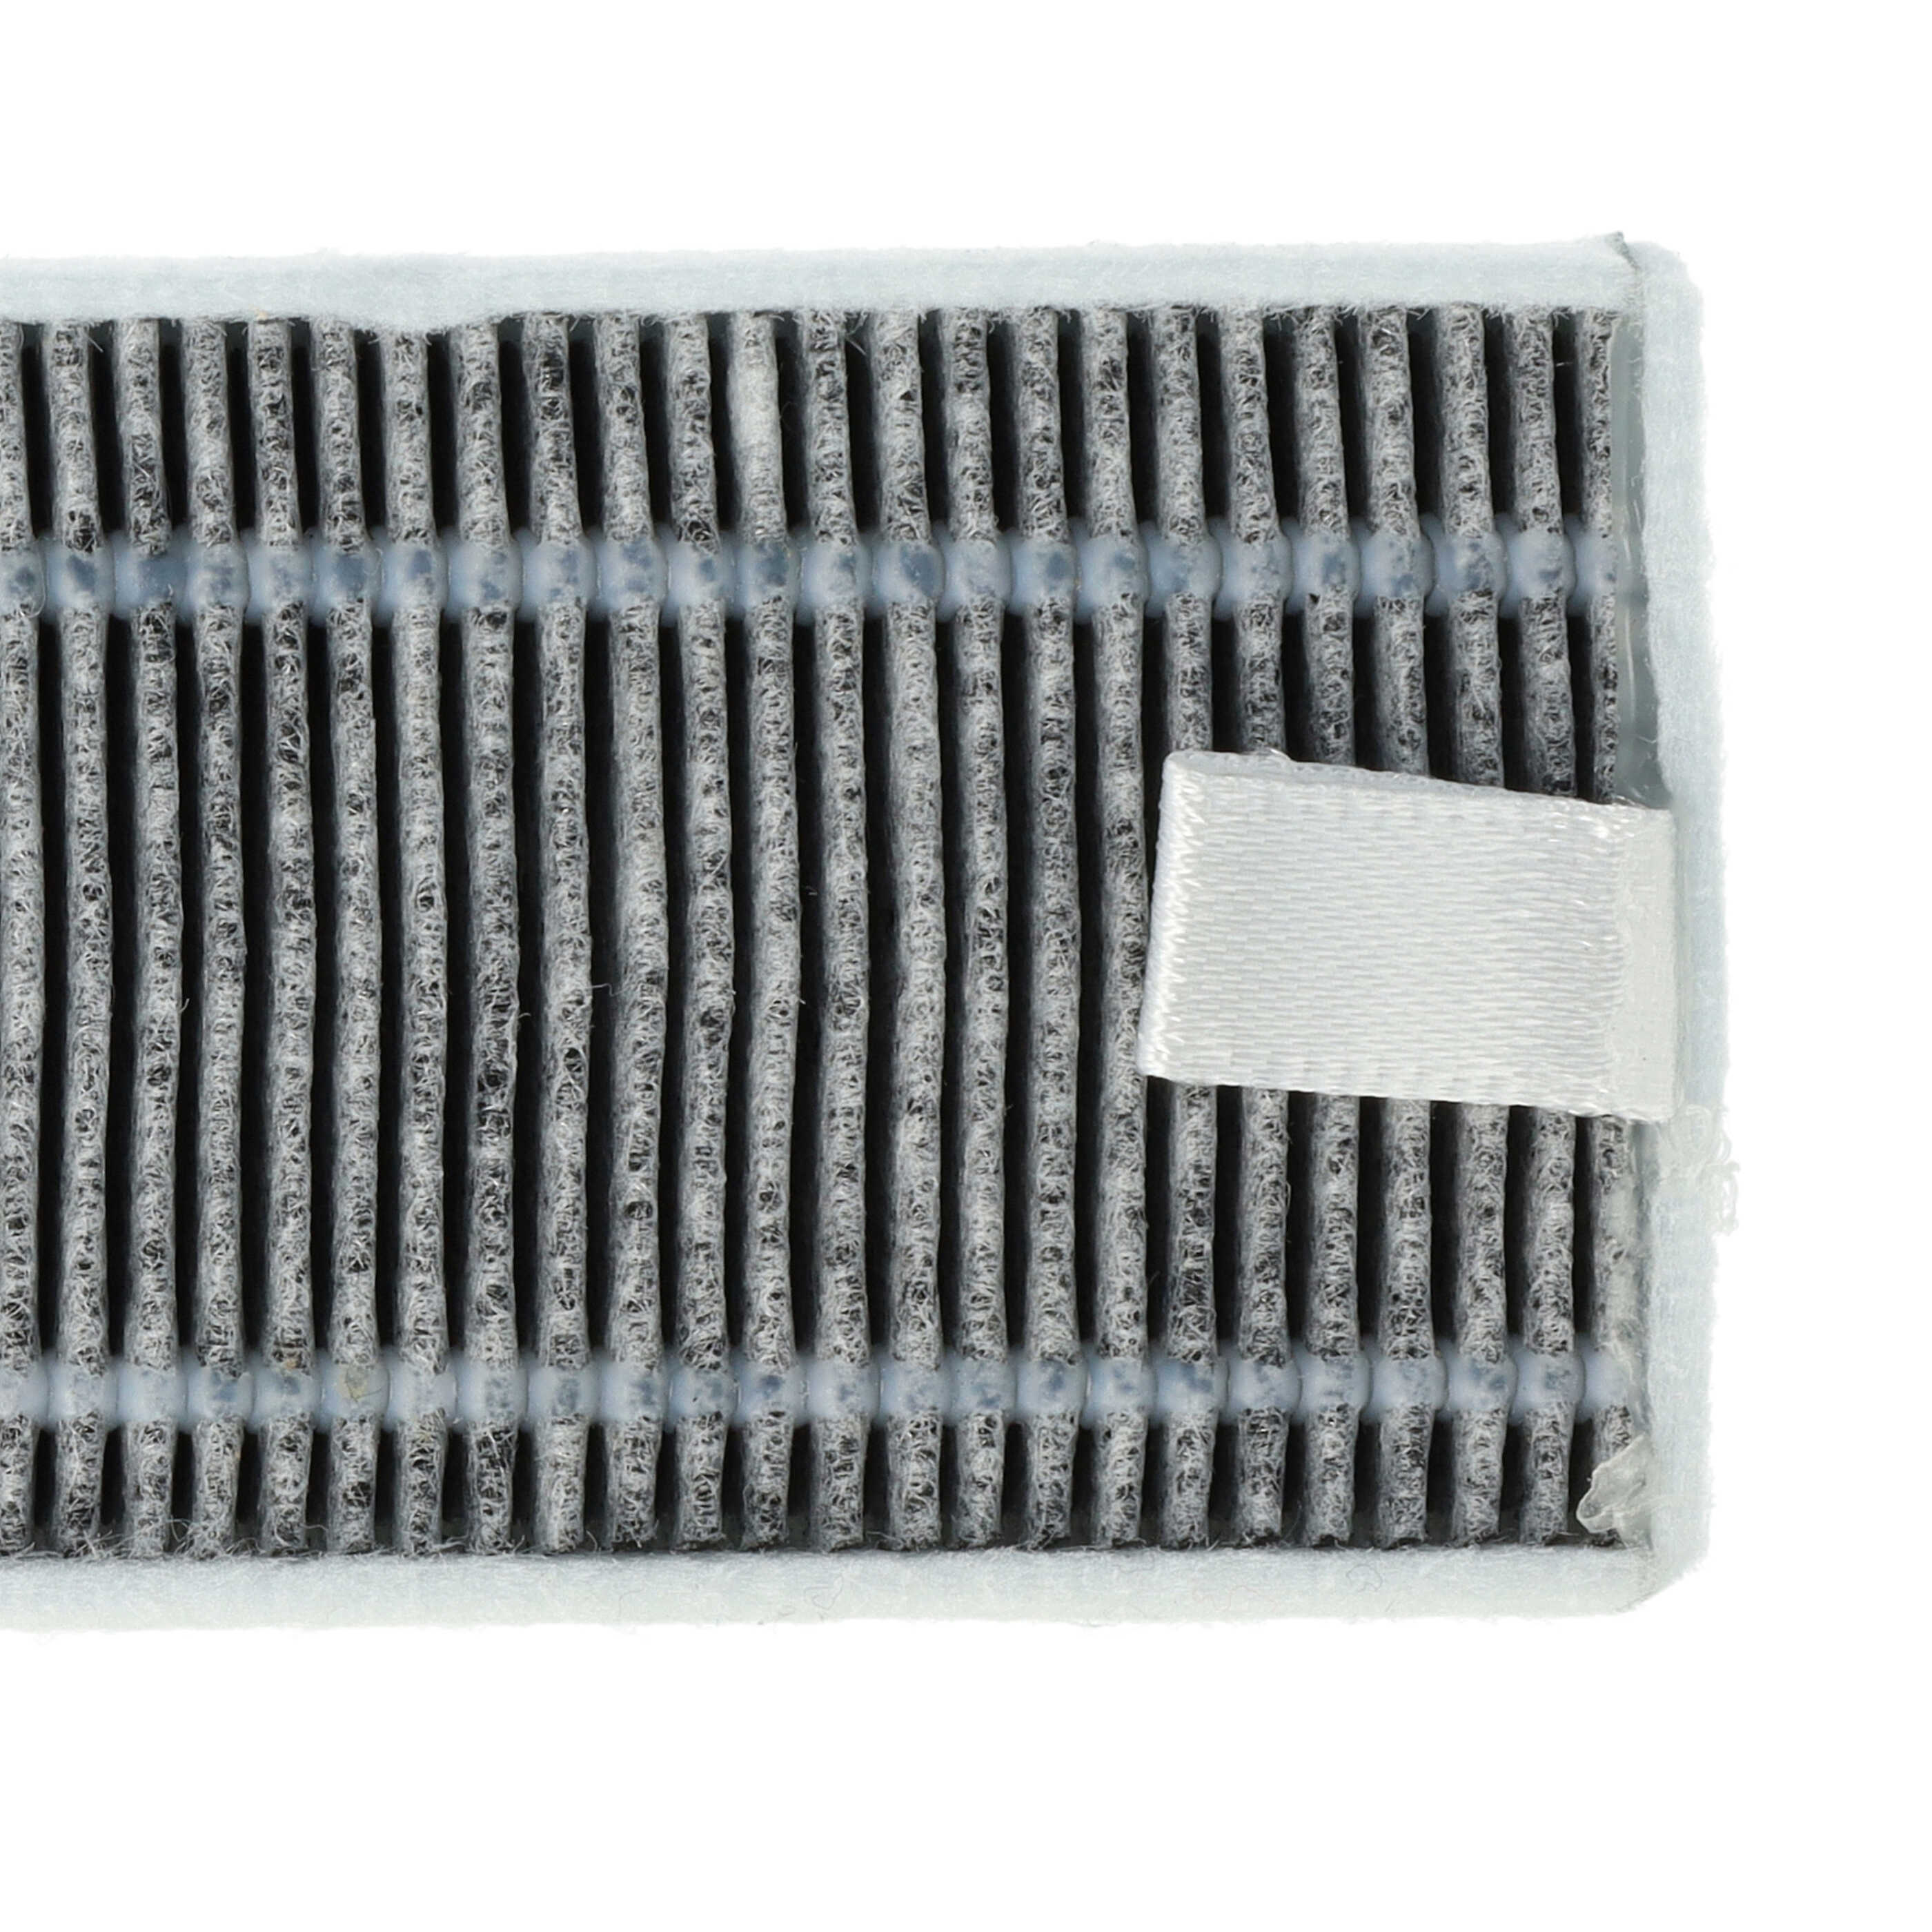 2x Filtro carboni attivi per aspirapolvere robot Proscenic, Cecotec, Xiaomi M7 - 13 x 4 x 1 cm